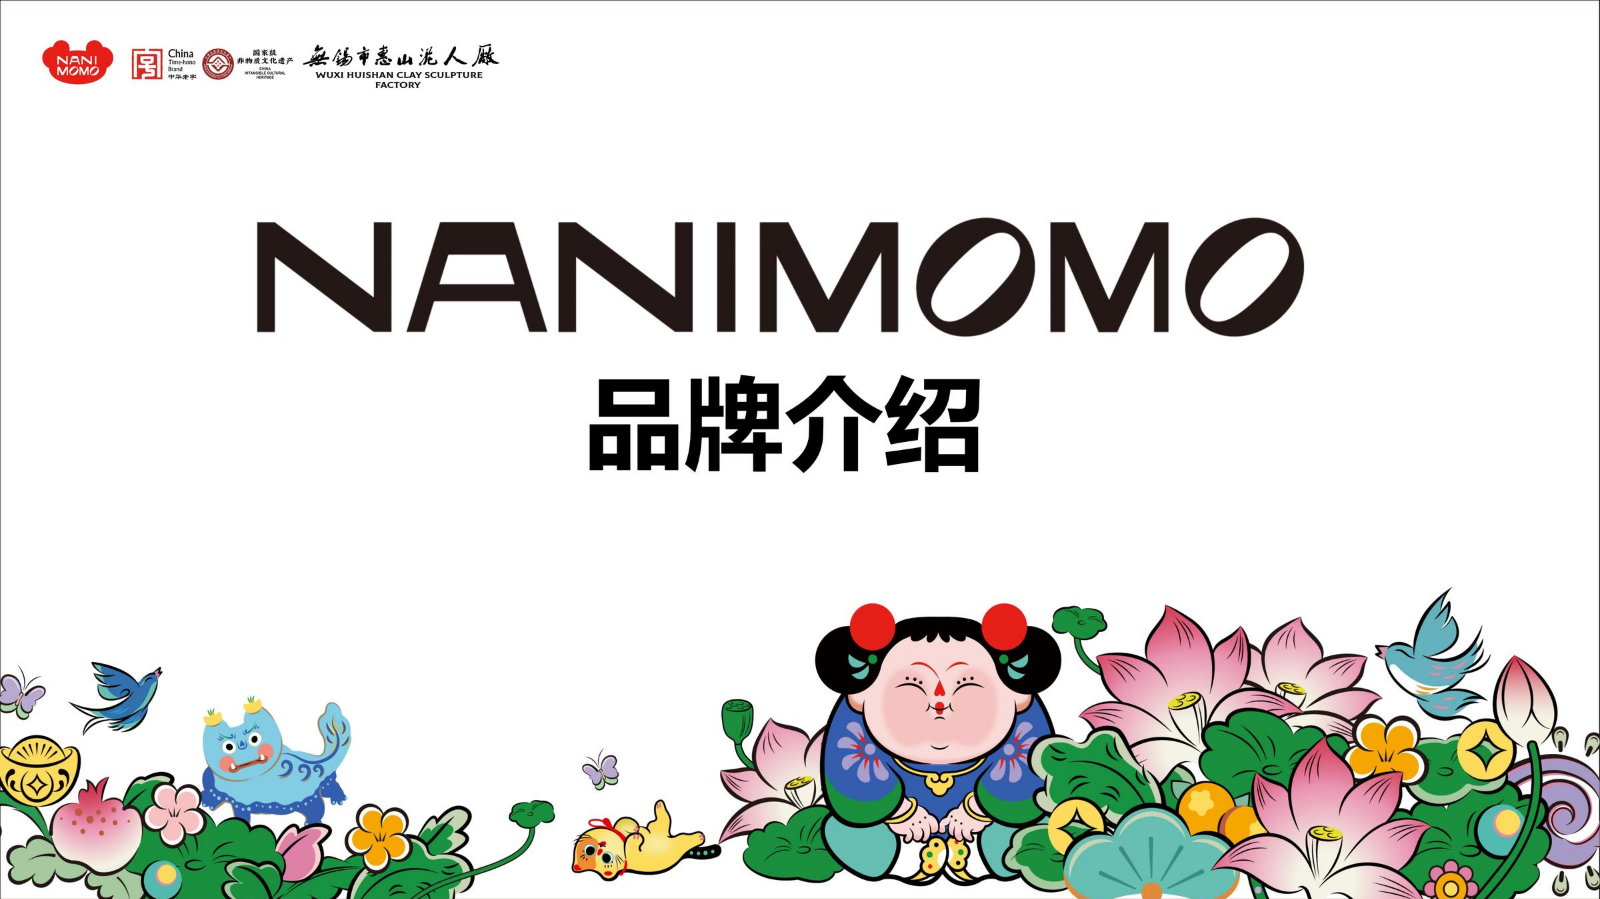 NANIMOMO品牌介绍